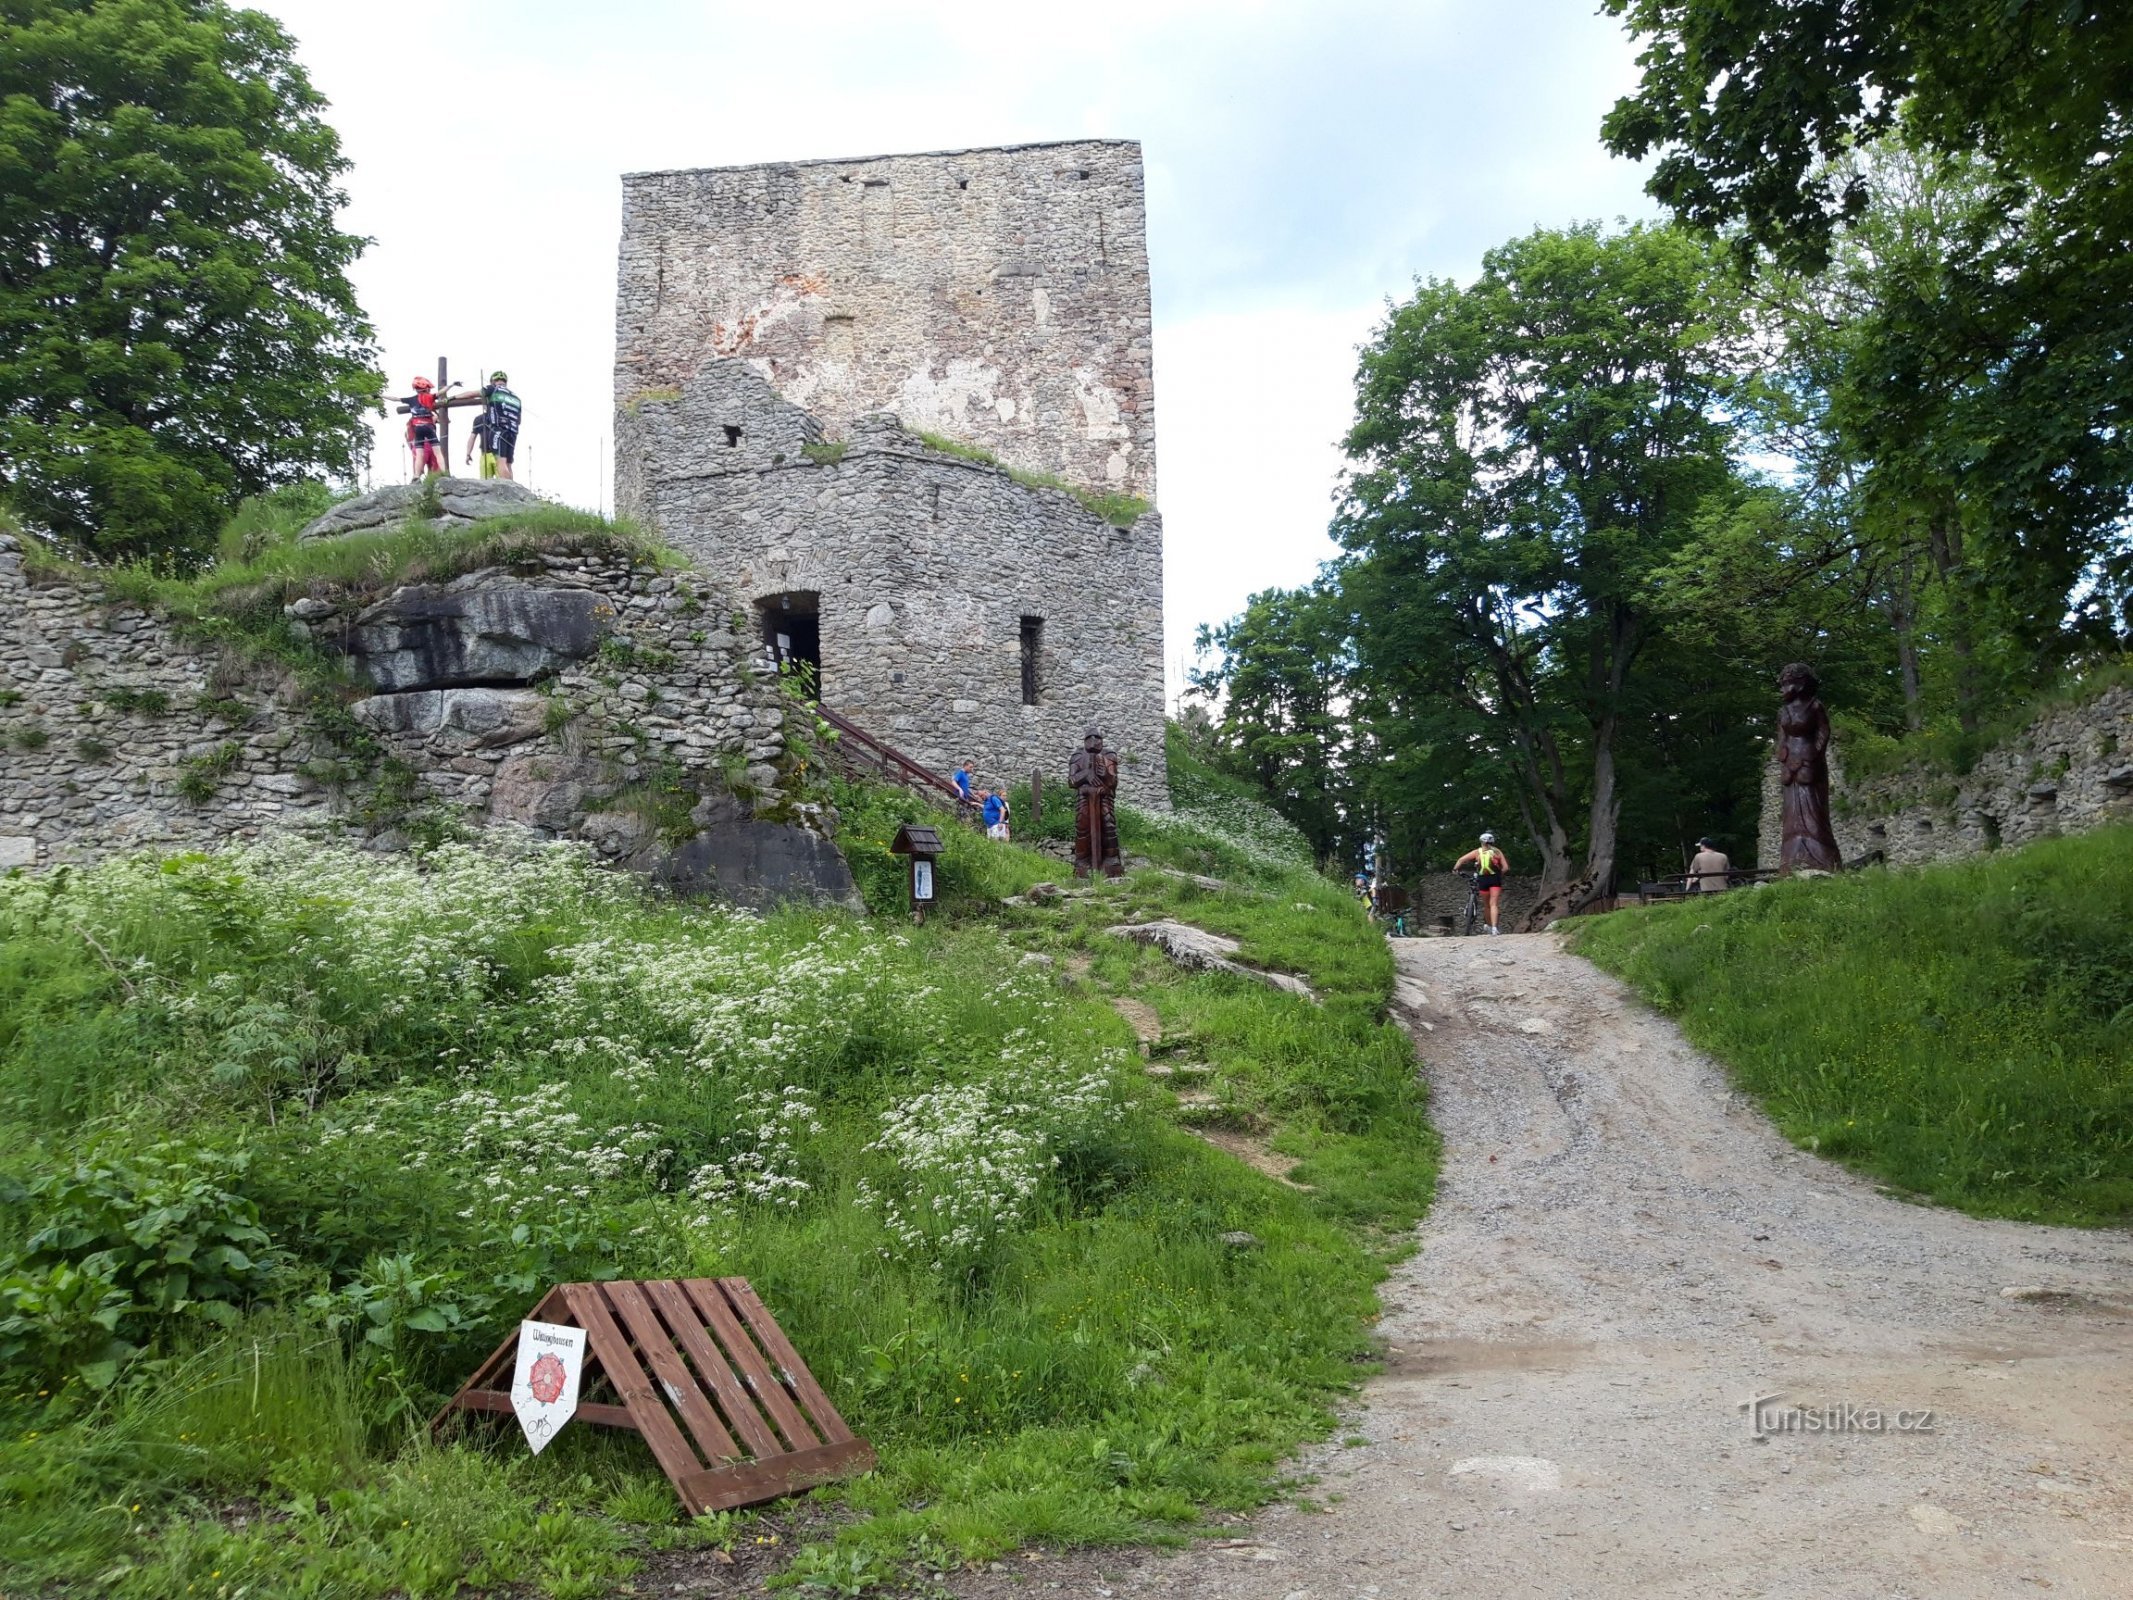 Vítka's stone - lâu đài cao nhất nước ta